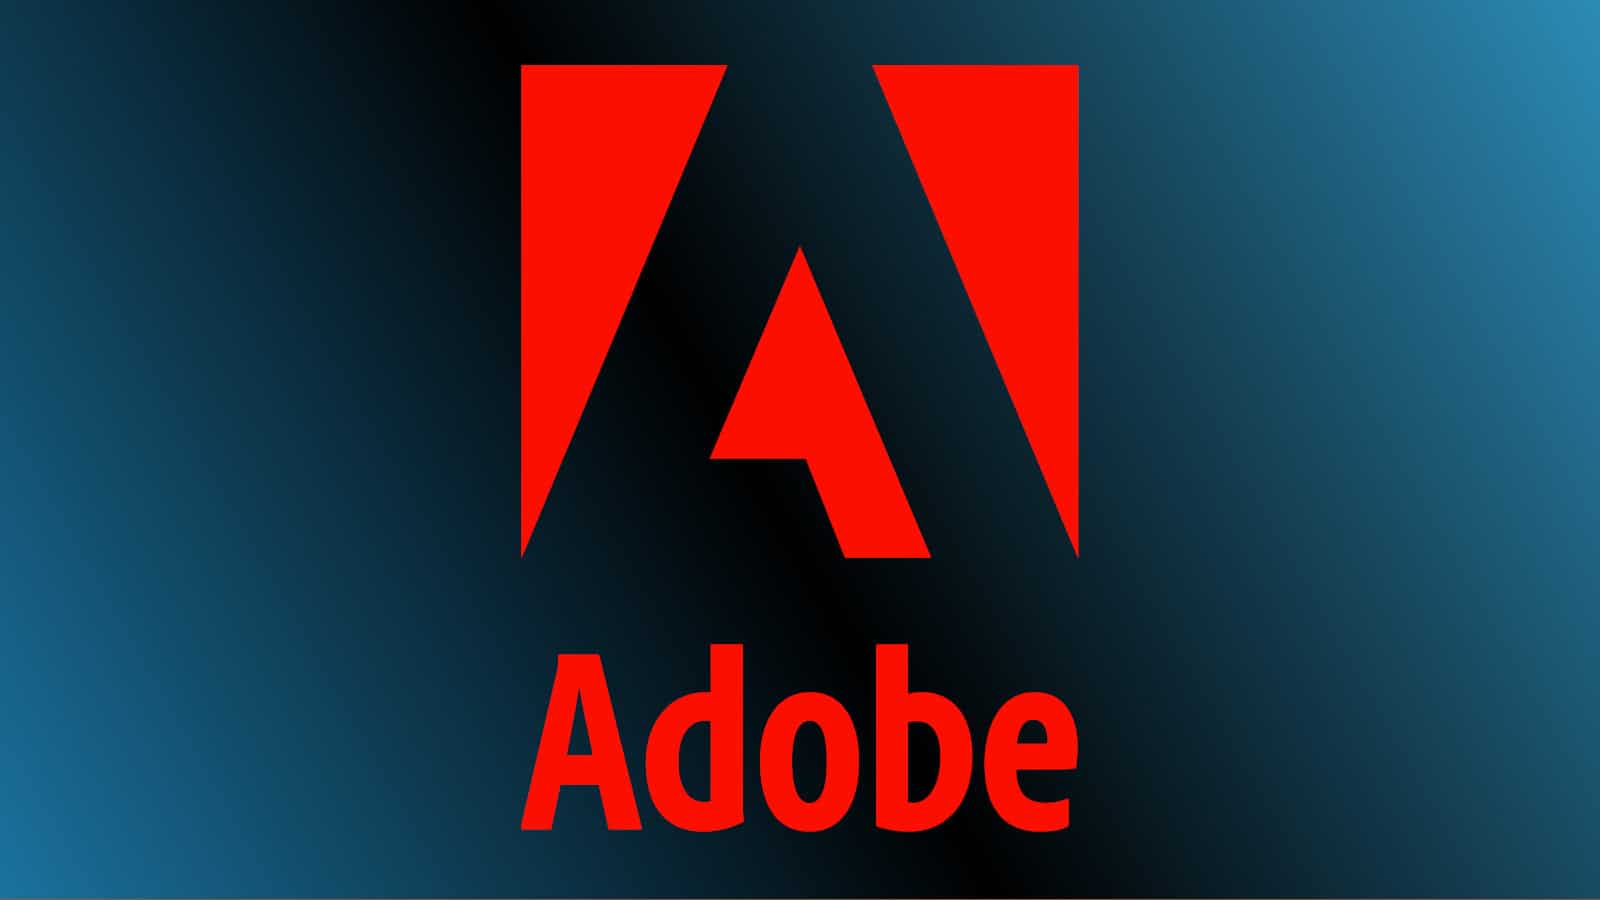 Adobe niega las afirmaciones sobre su inteligencia artificial escaneando documentos en secreto